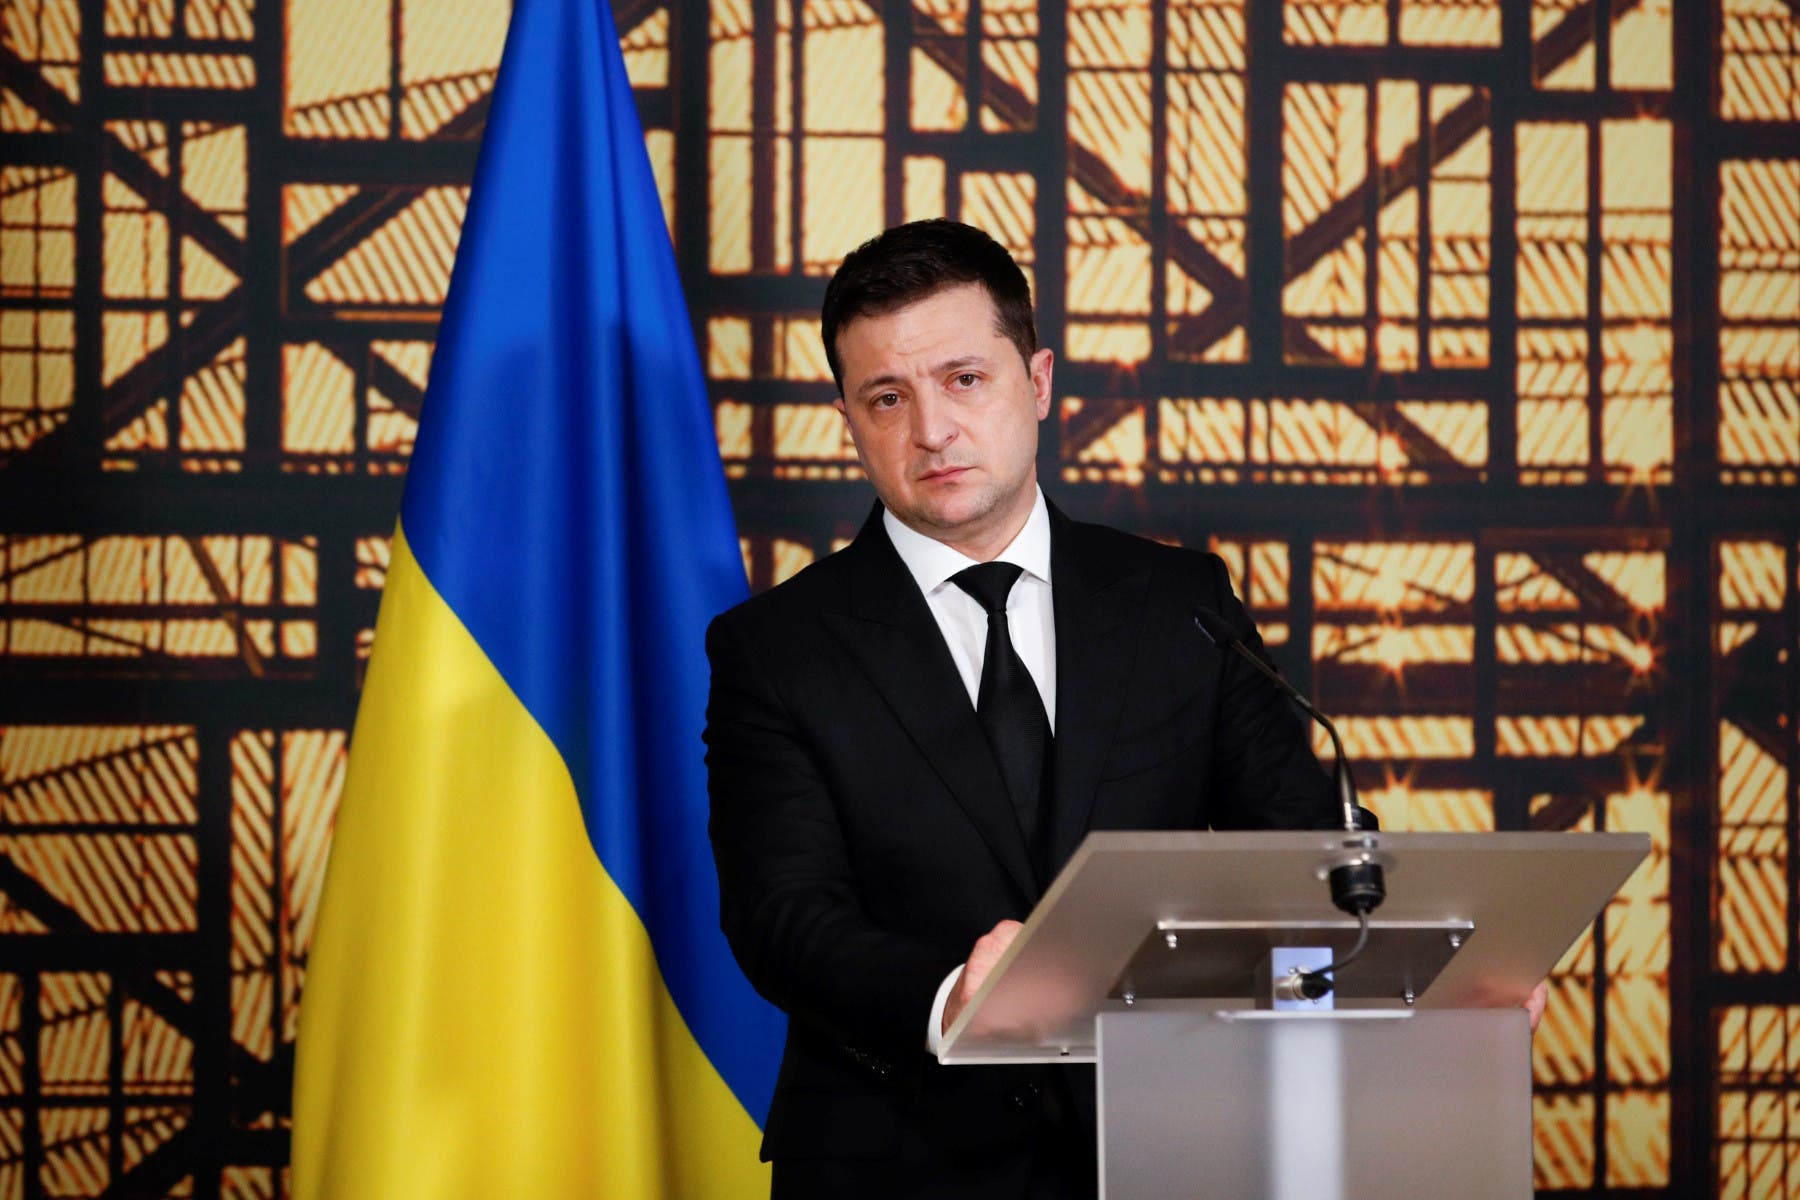 ولادیمیر زیلنسکی، رئیس جمهوری اوکراین